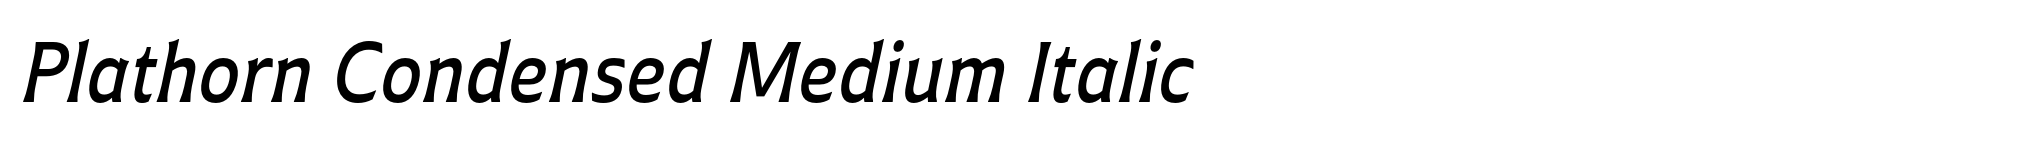 Plathorn Condensed Medium Italic image